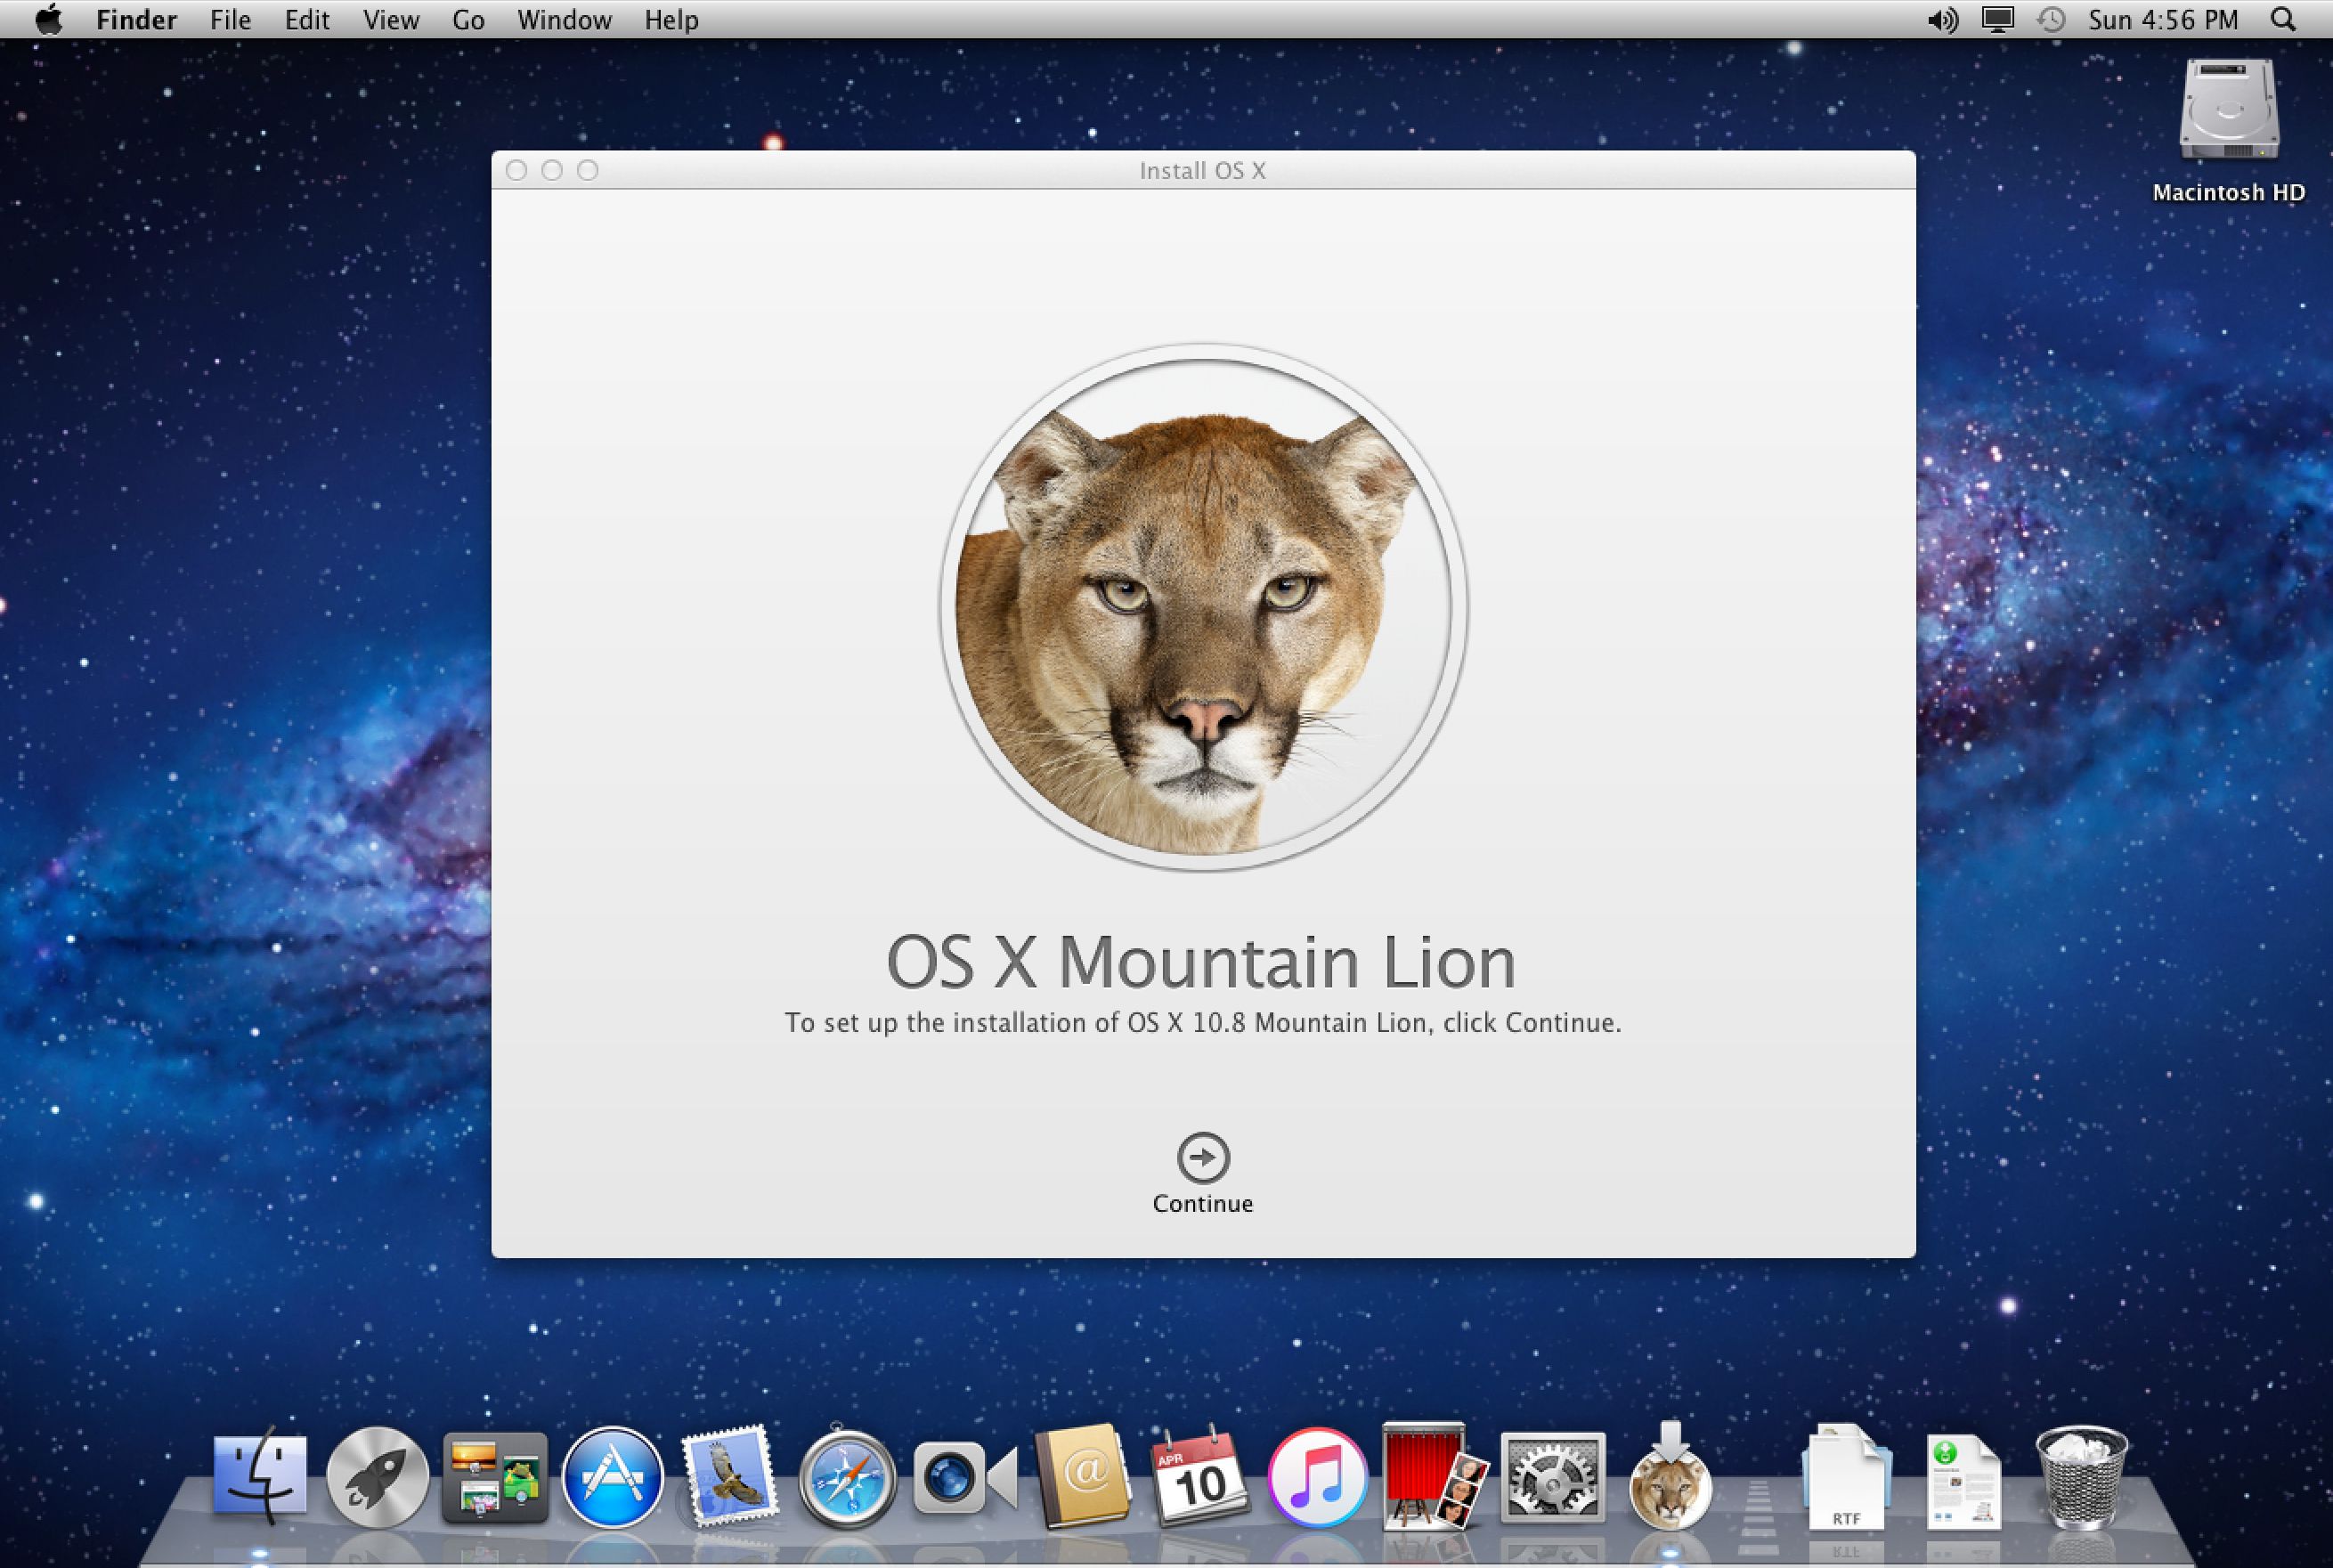 Software mac os x lion 10.7.5 11g63